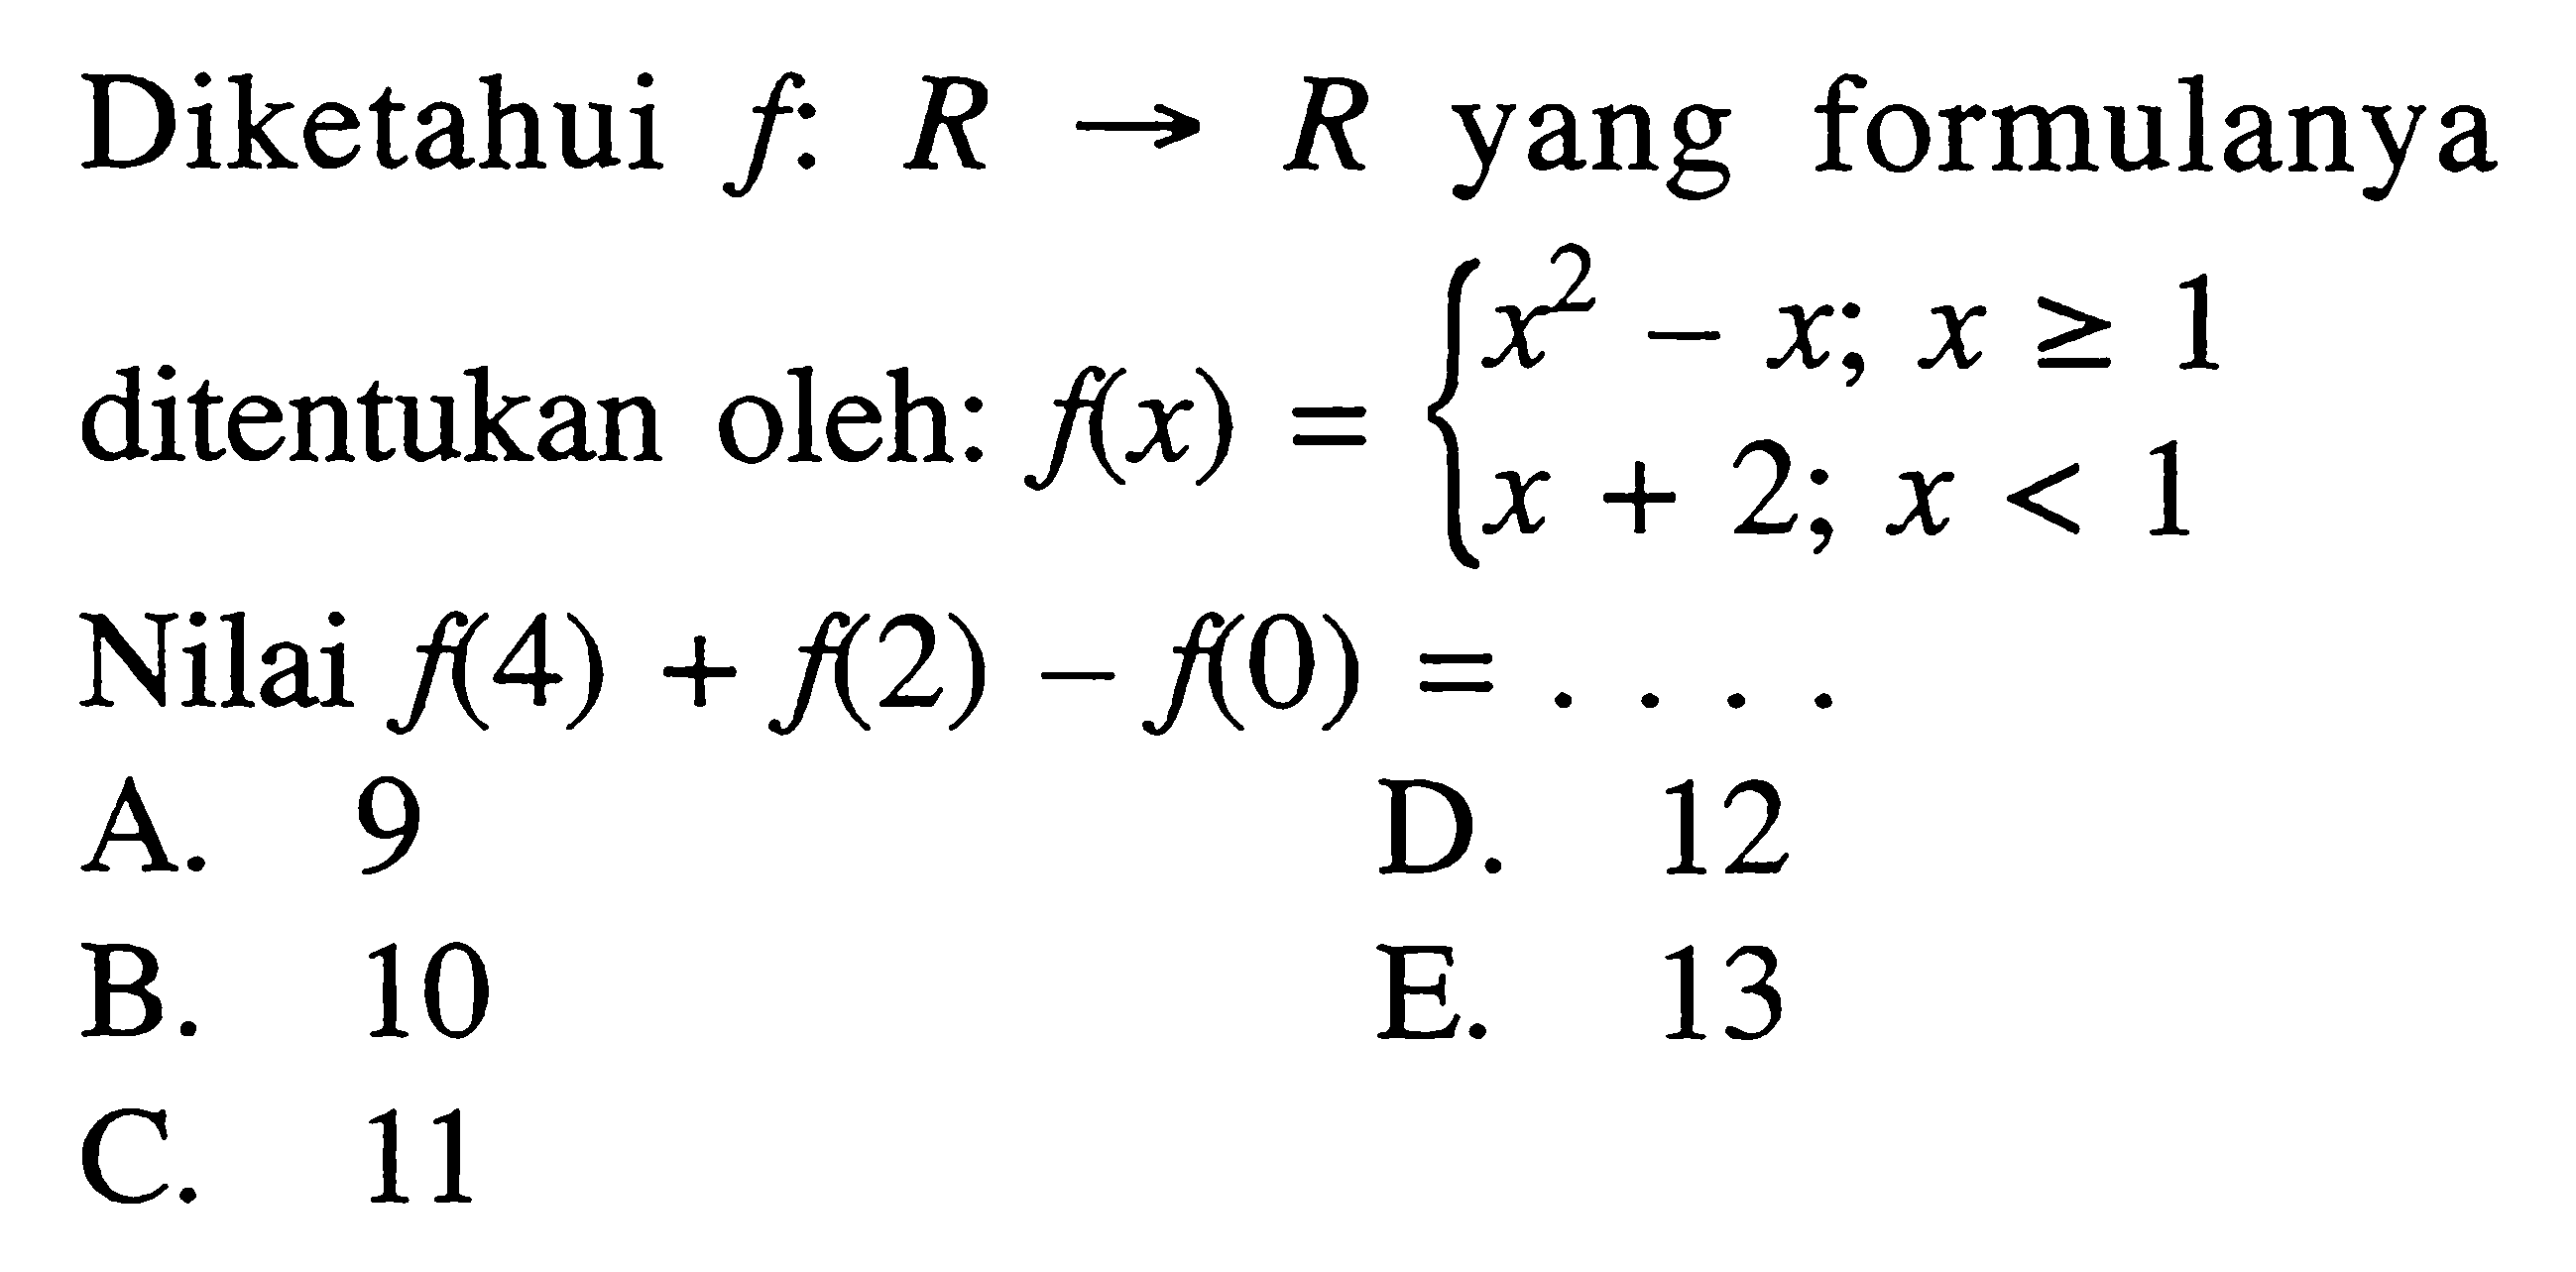 Diketahui  f: R -> R yang formulanya ditentukan oleh:  f(x)=x^2-x; x >=1  f(x)=x+2; x<1. Nilai f(4)+f(2)-f(0)=... 